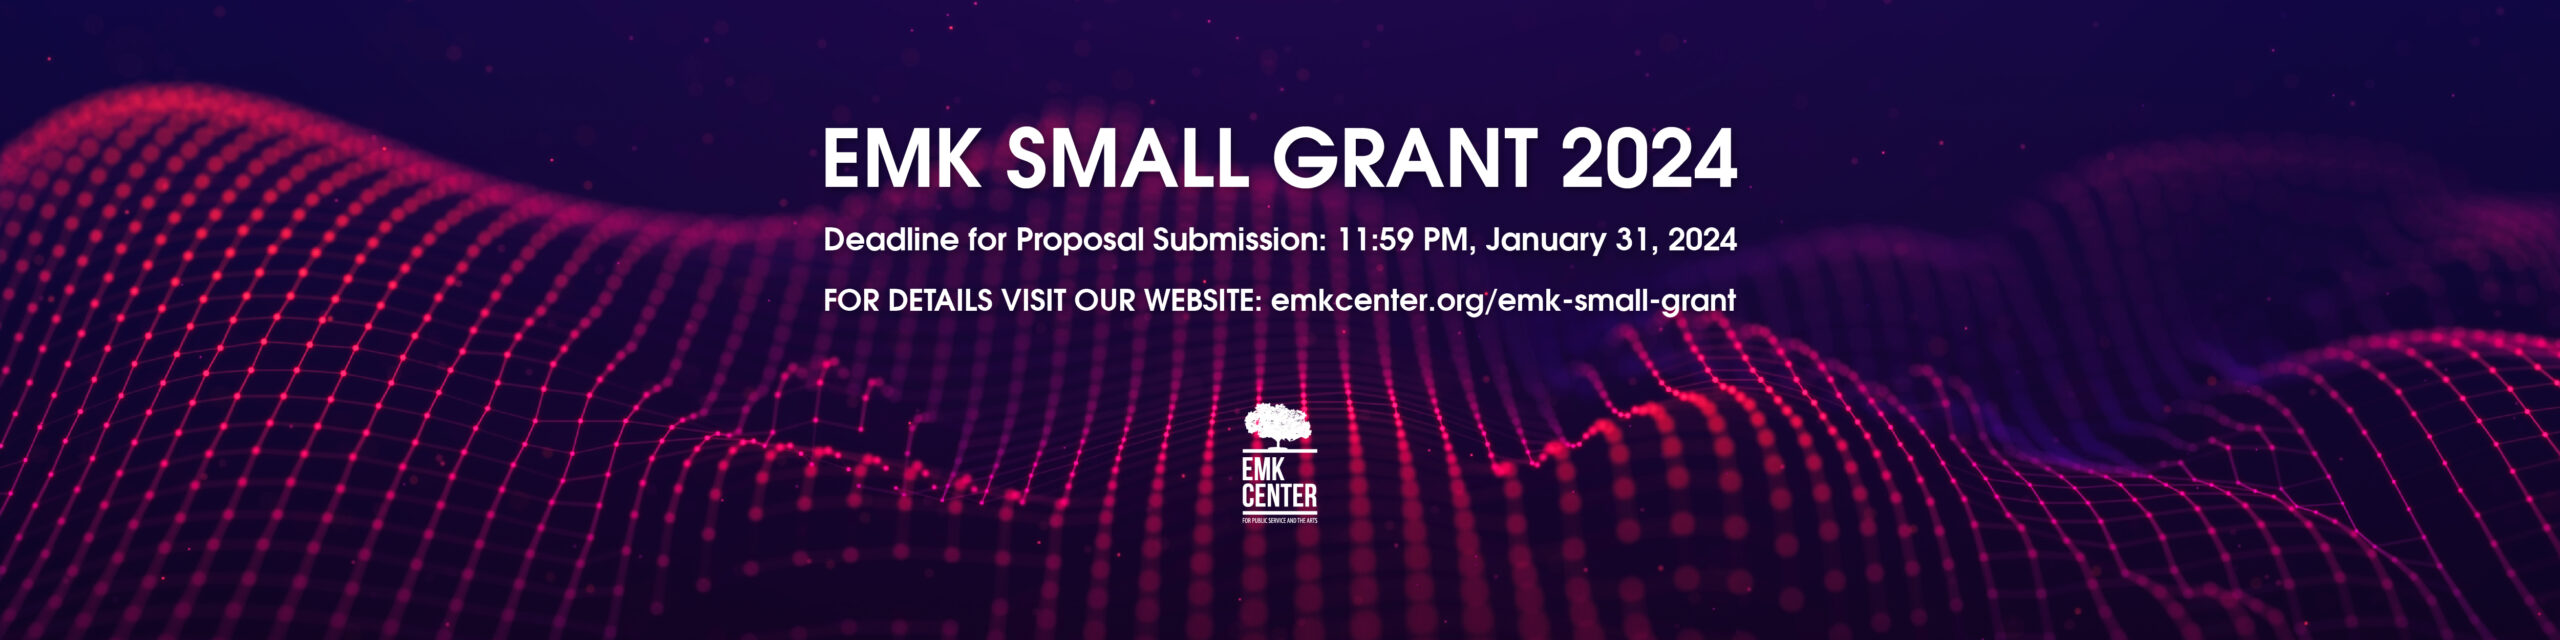 EMK Small Grant 2024